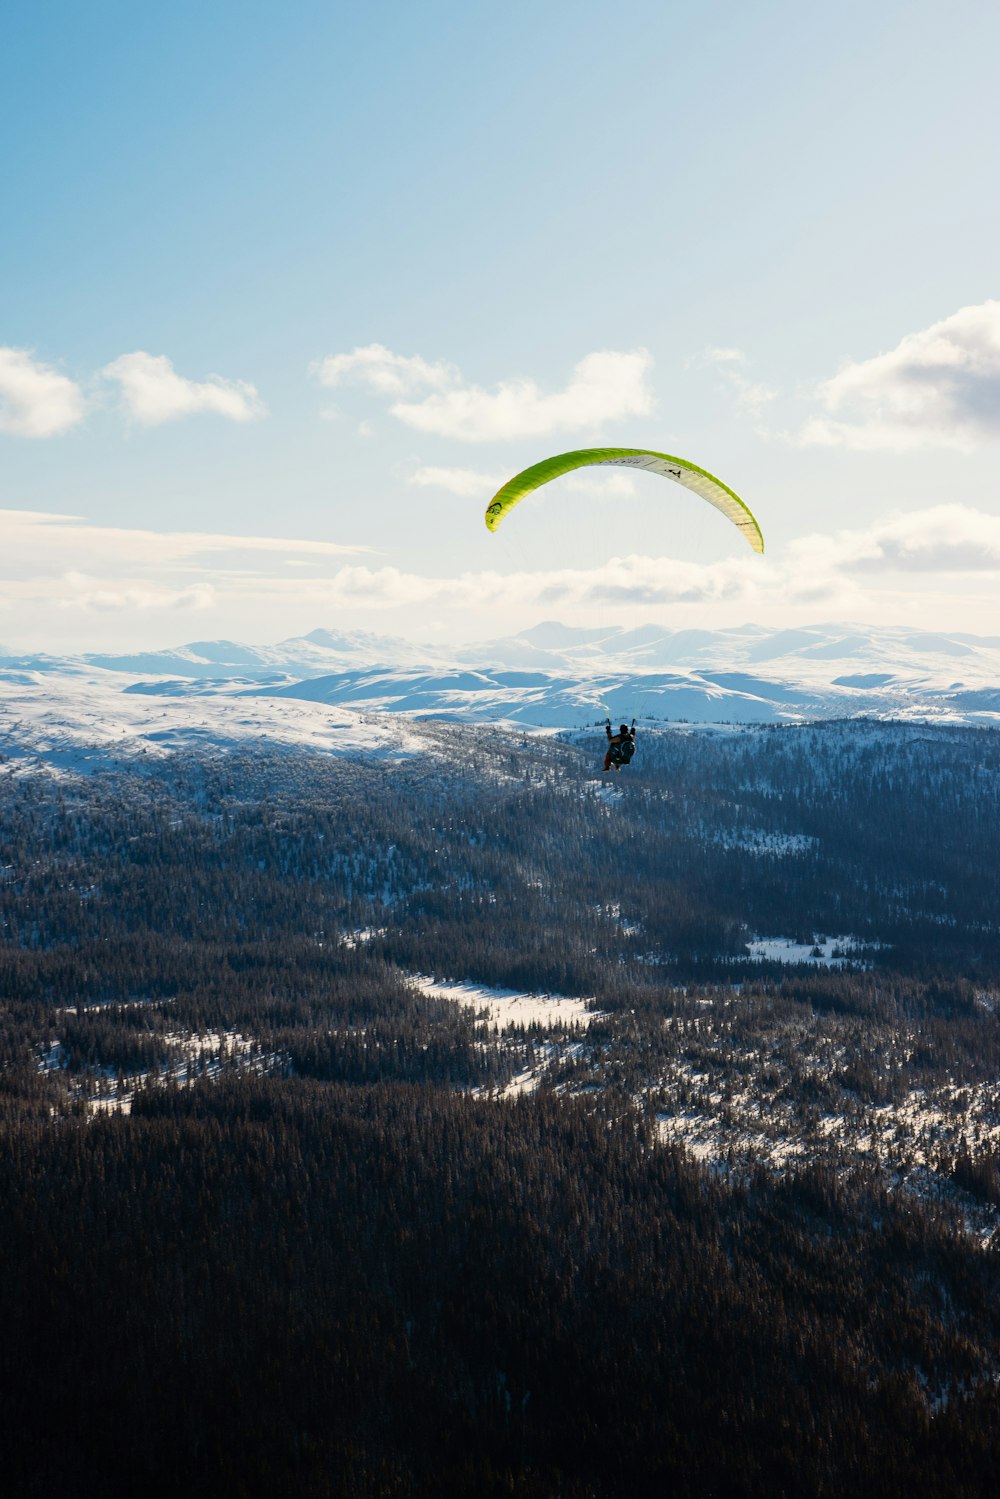 une personne fait du parachute ascensionnel sur une montagne enneigée